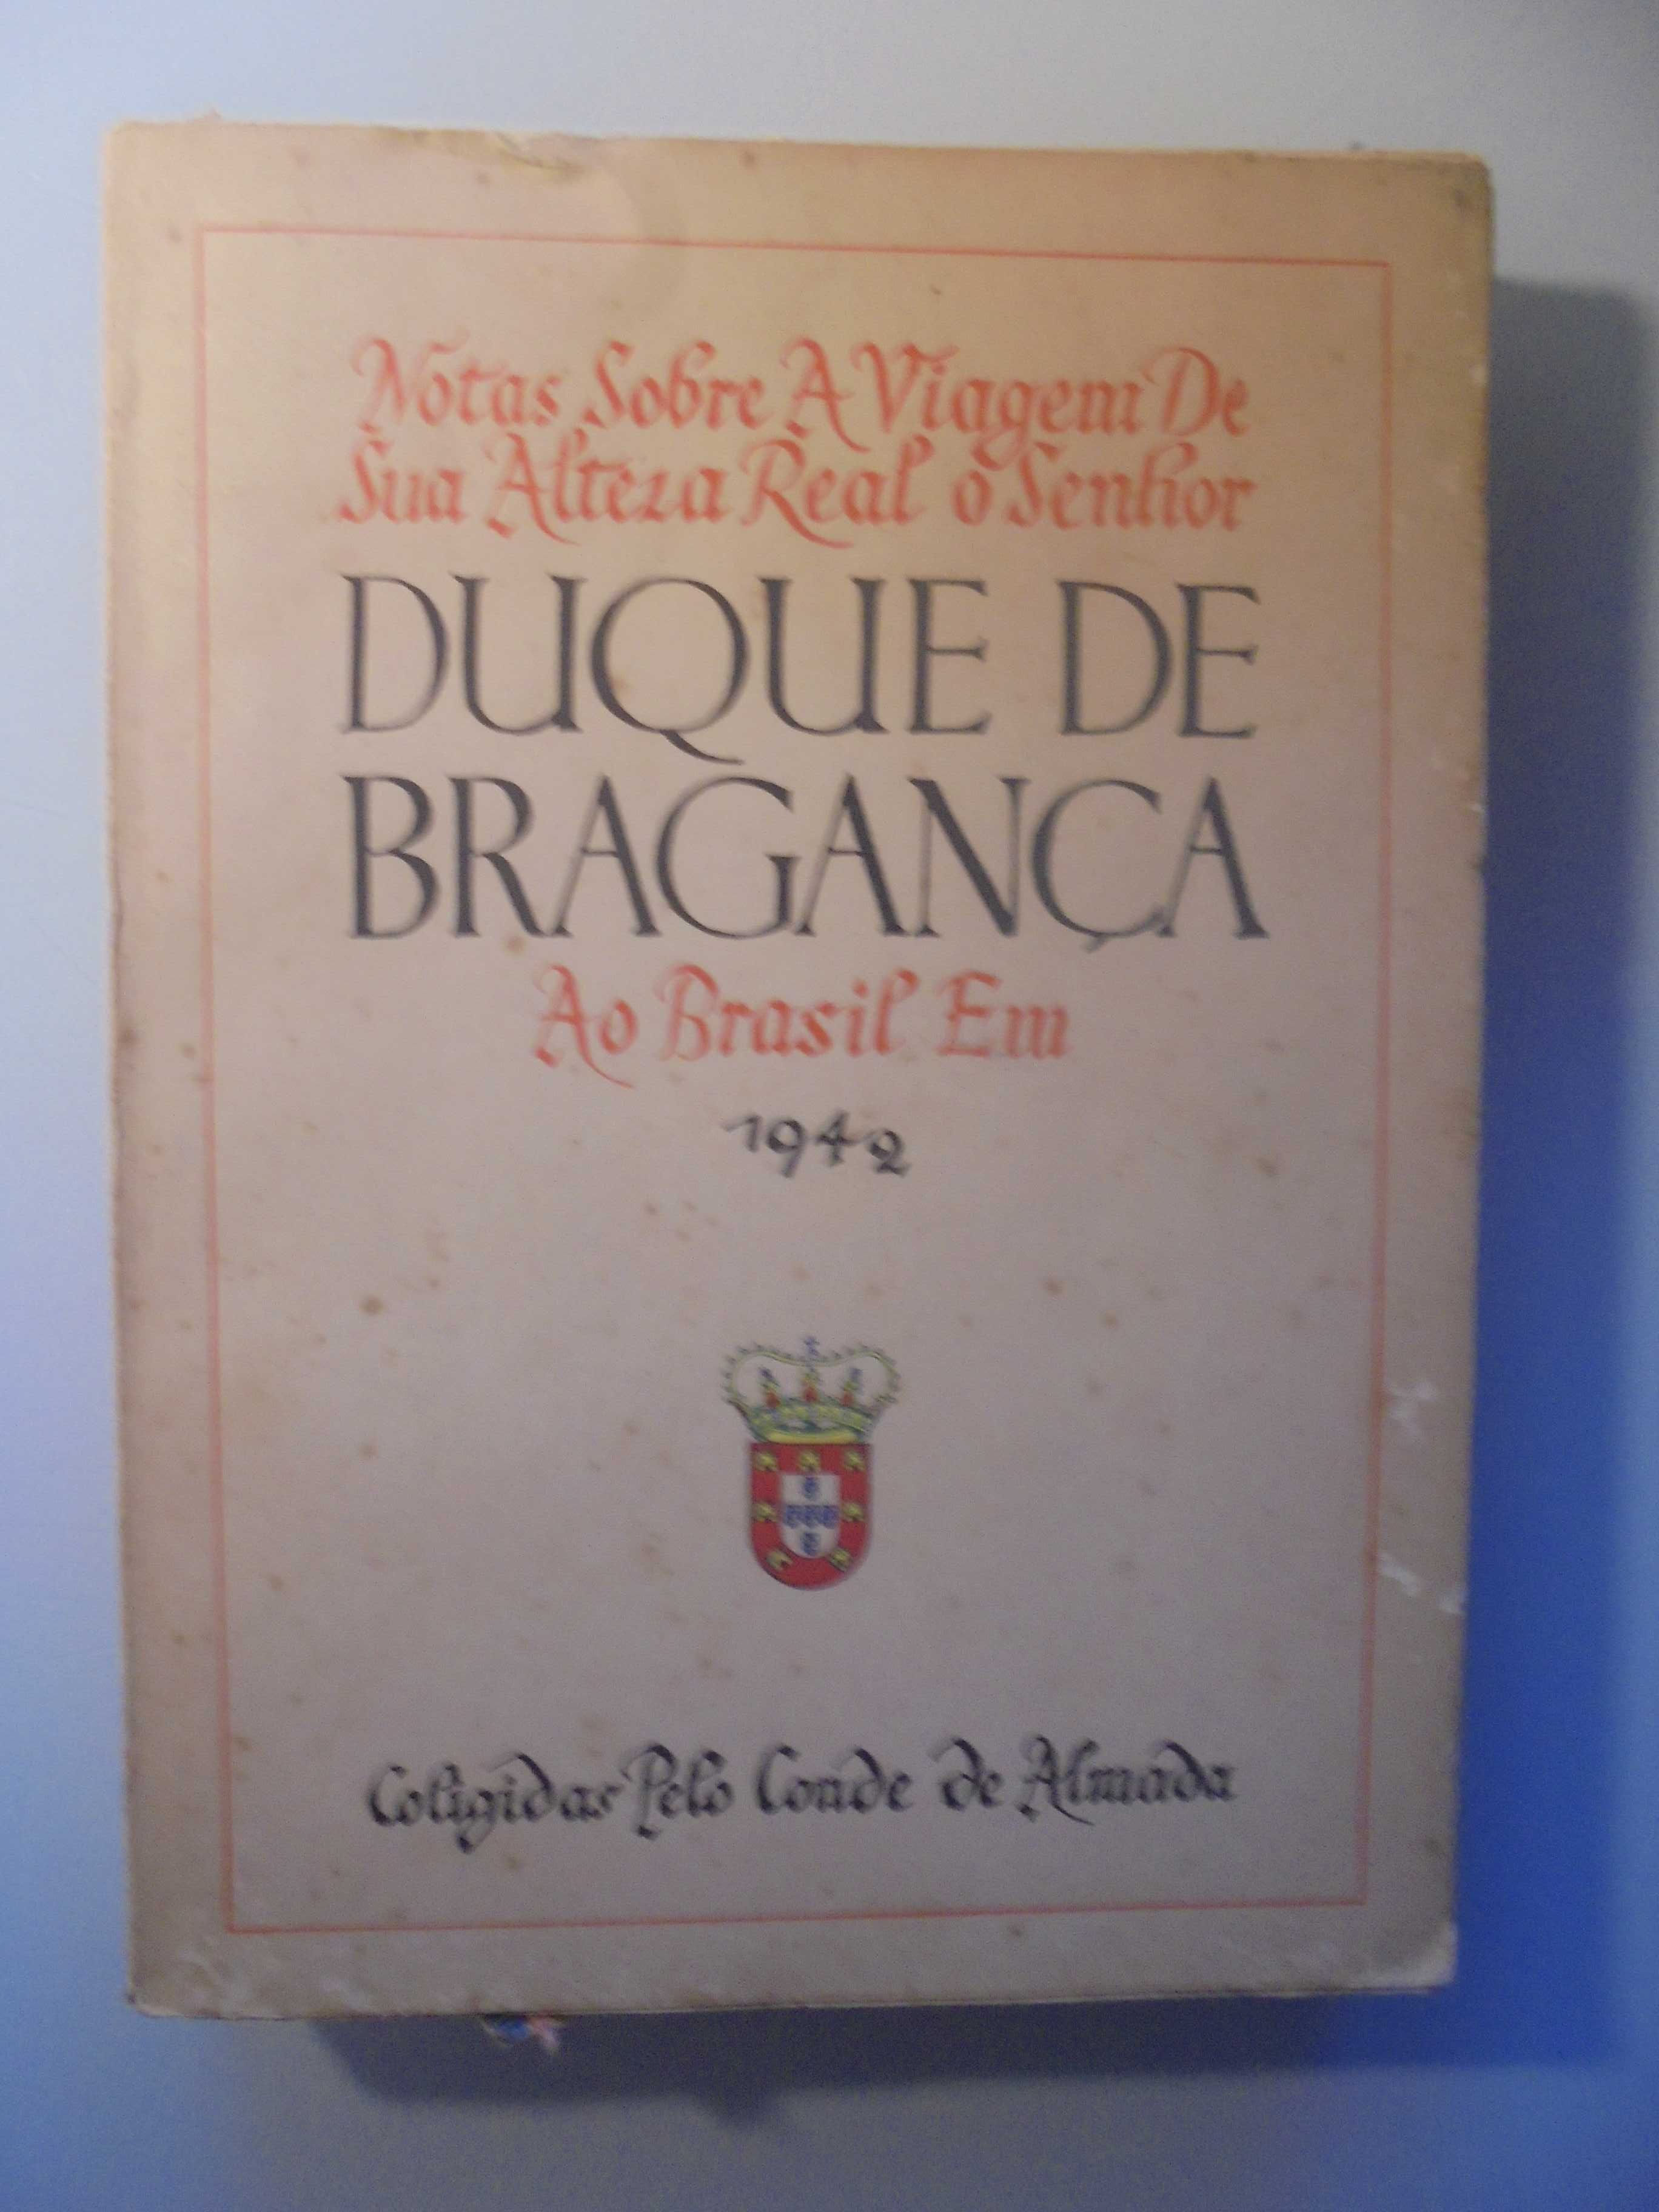 Almada (Conde de);Duque de Bragança-Notas sobre a Viagem-Brasil